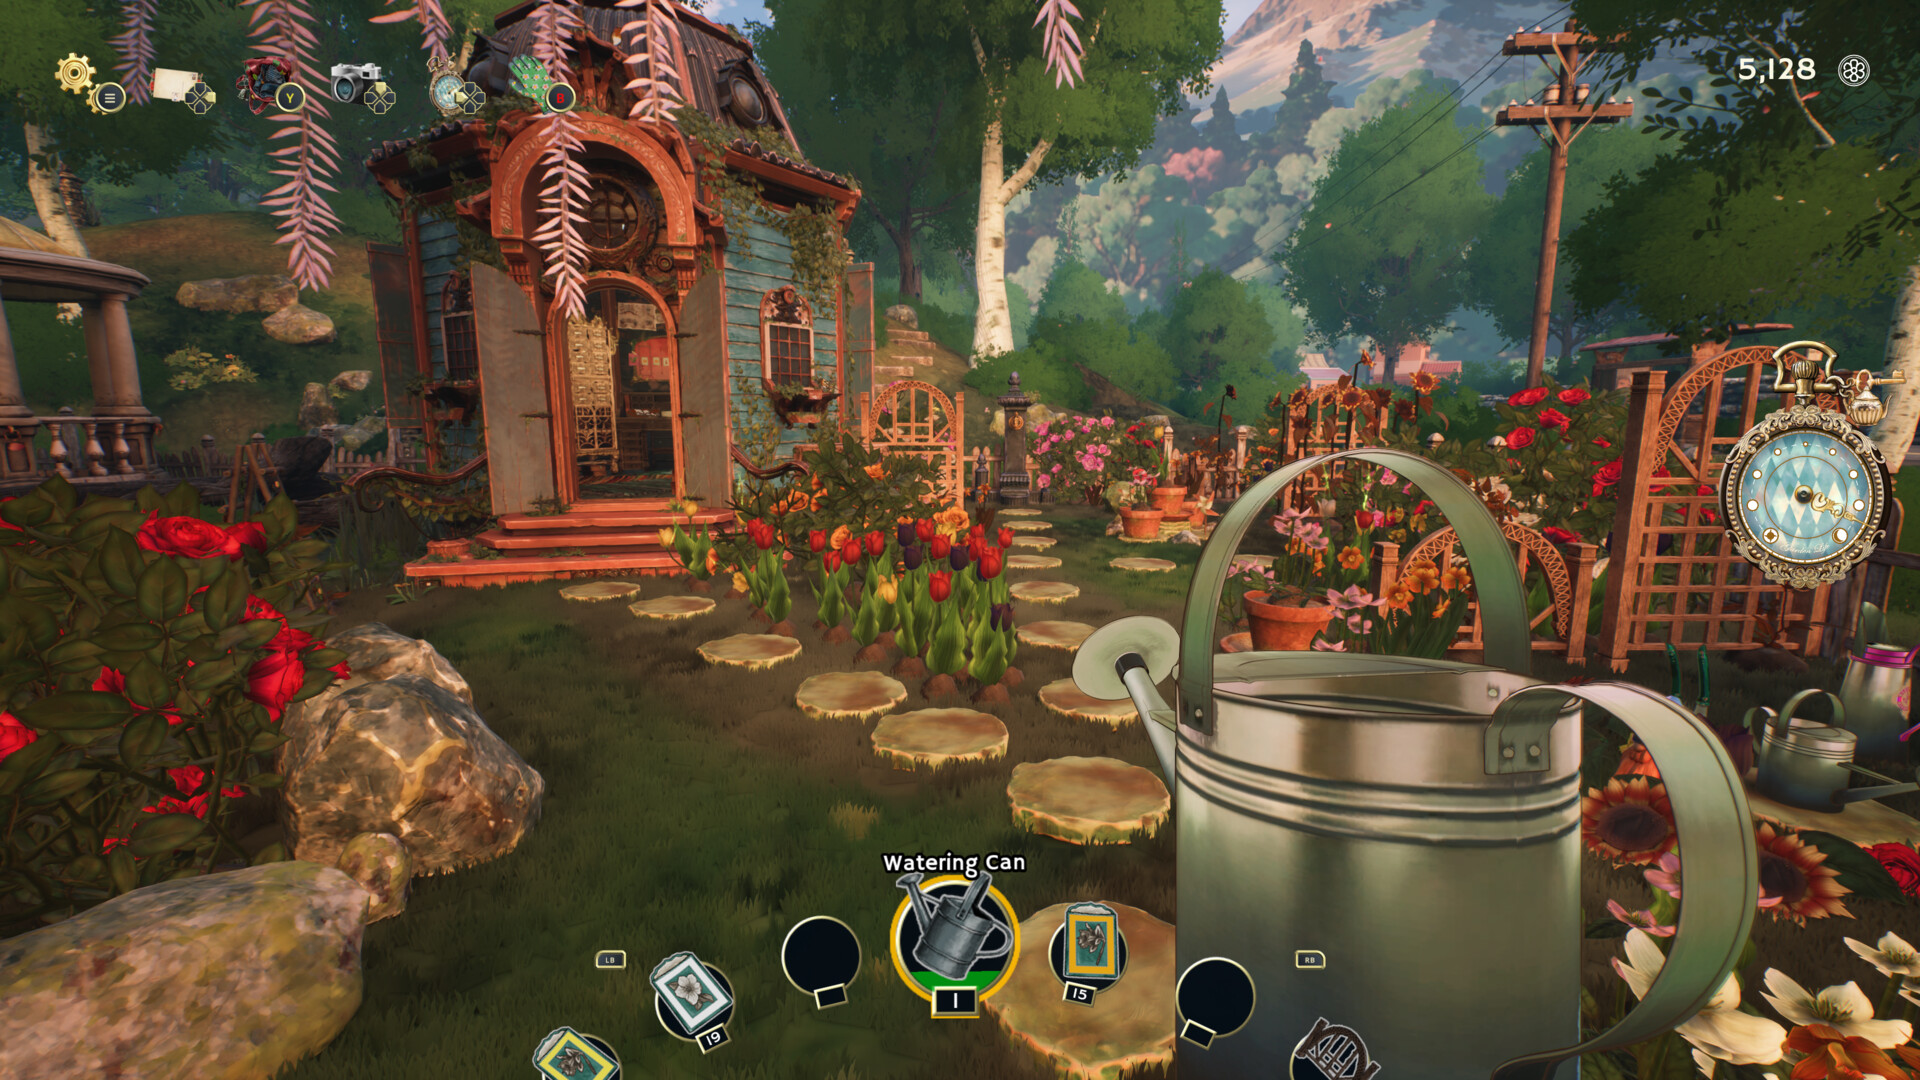 Garden In!, PC Linux Steam Game